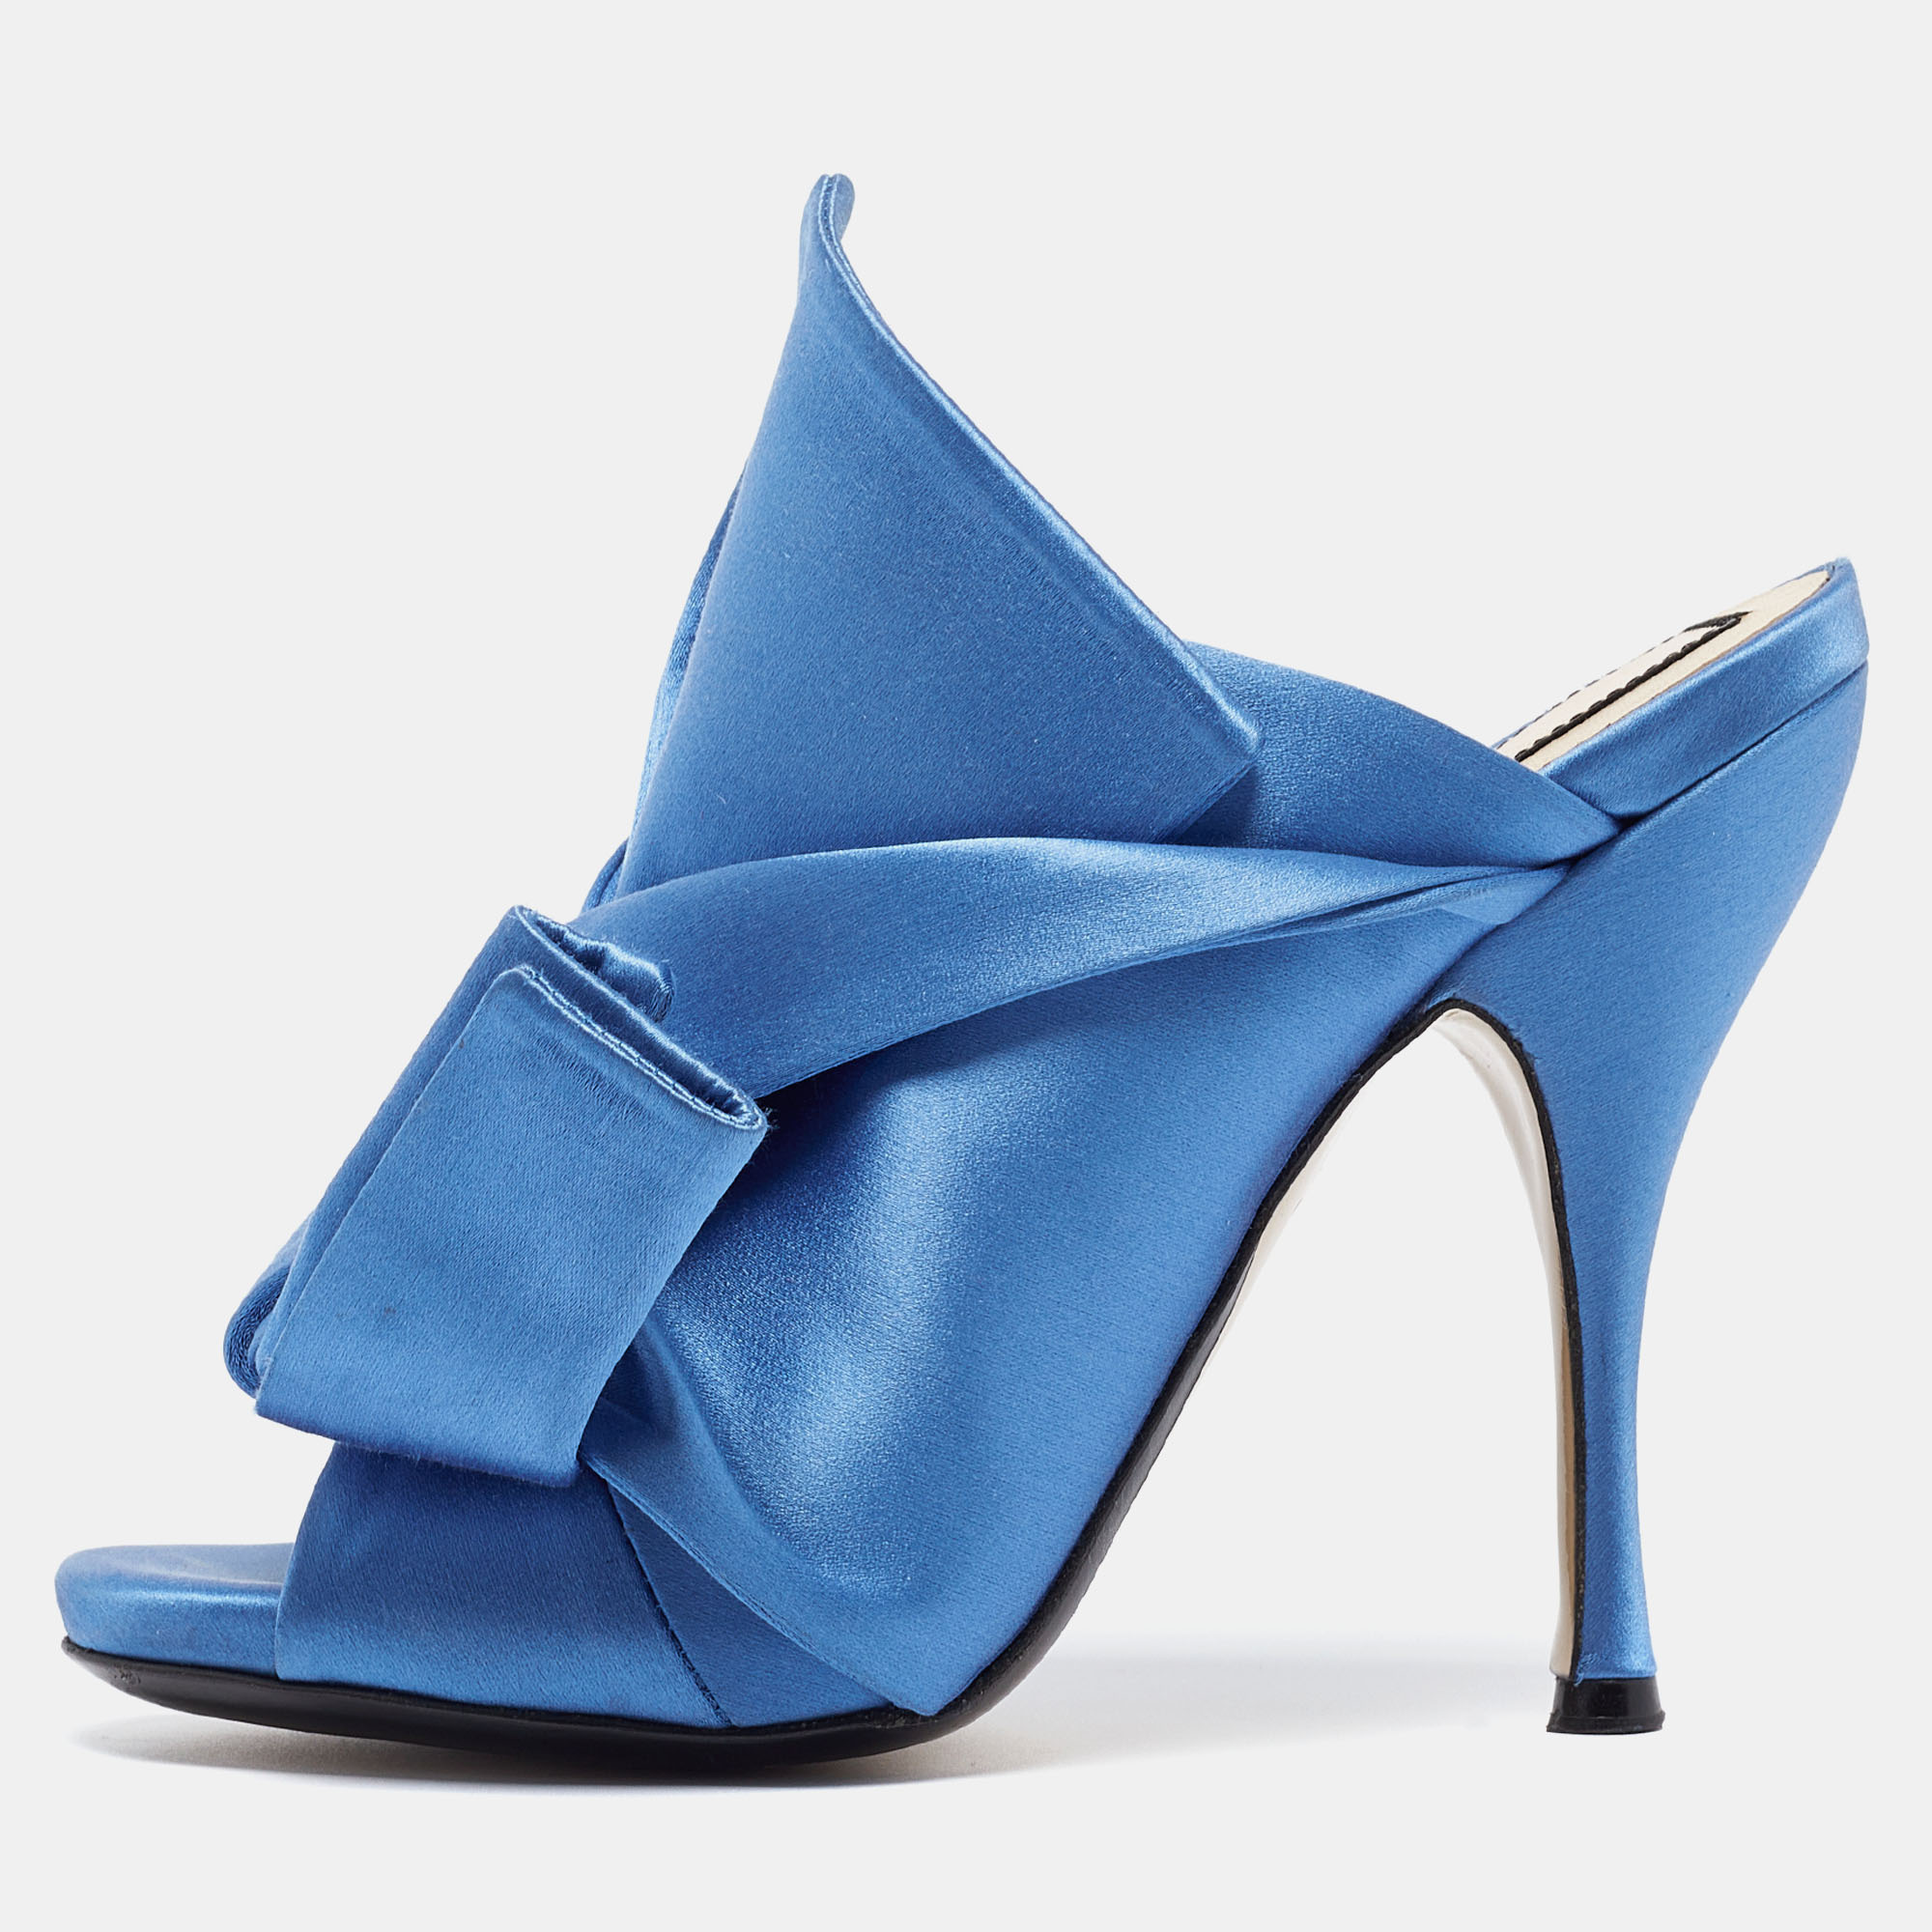 N21 blue satin ronny mule sandals size 37